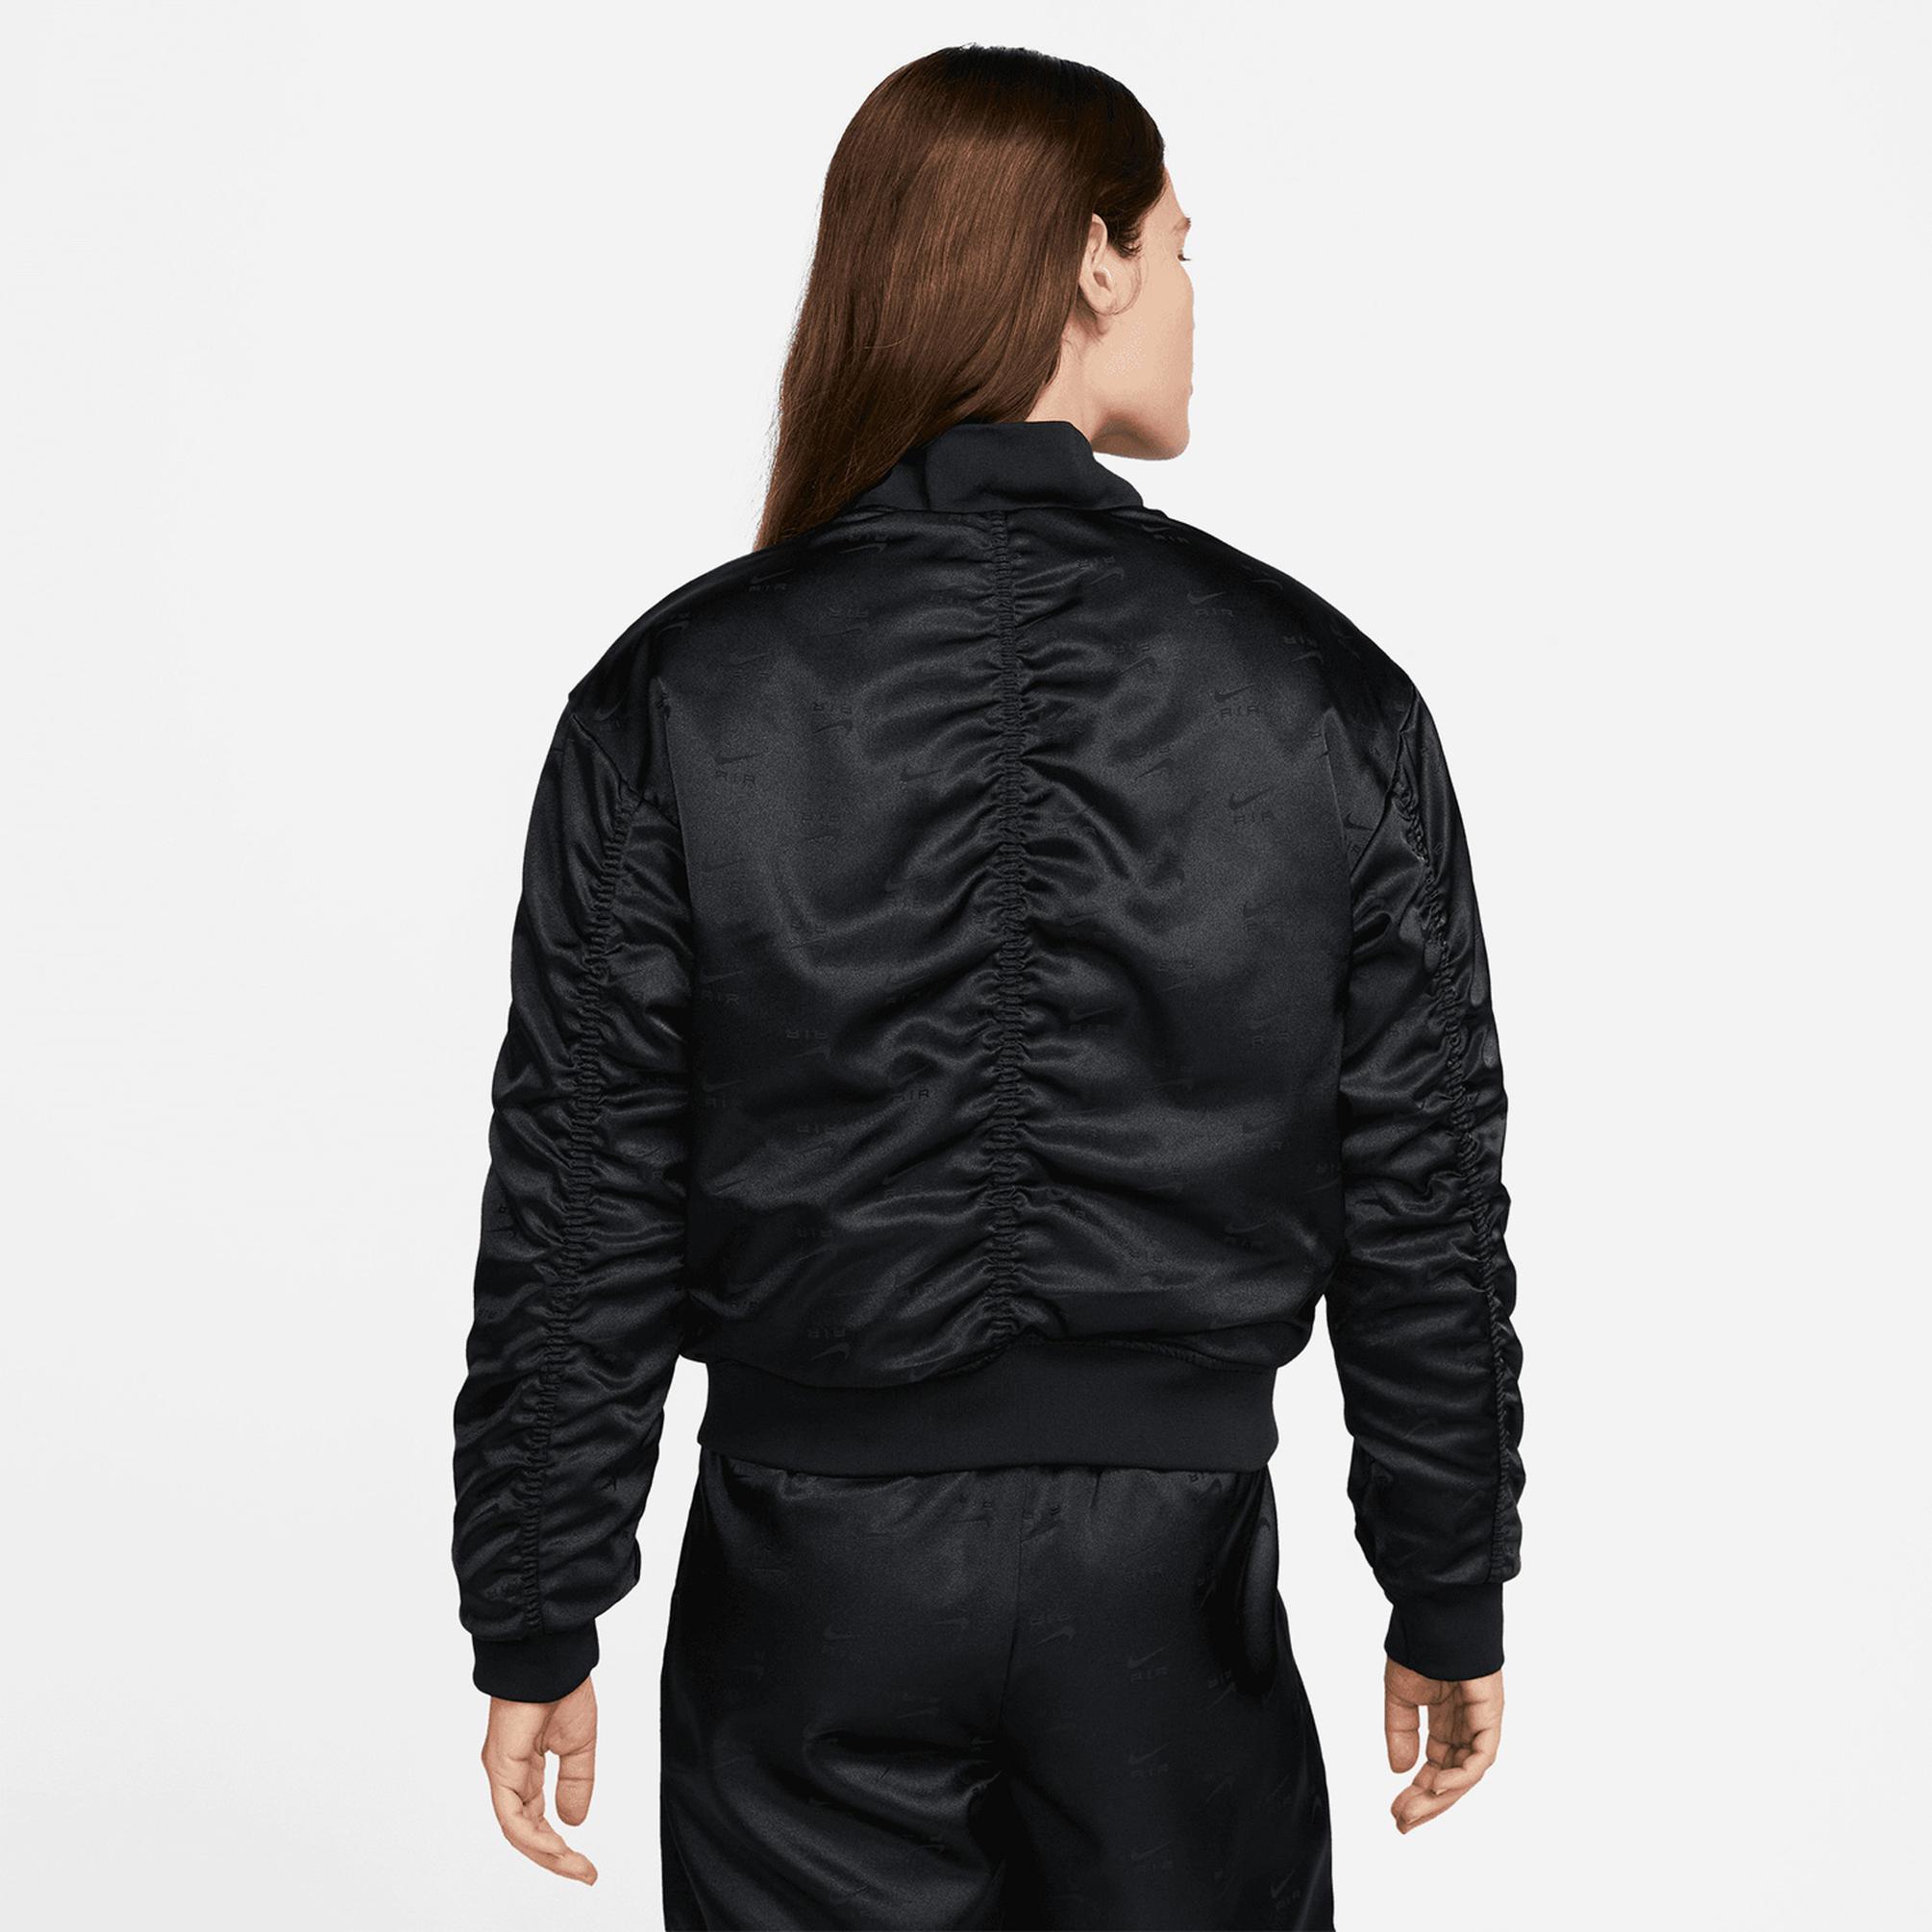  Nike Air Kadın Siyah/Gri/Gümüş Ceket